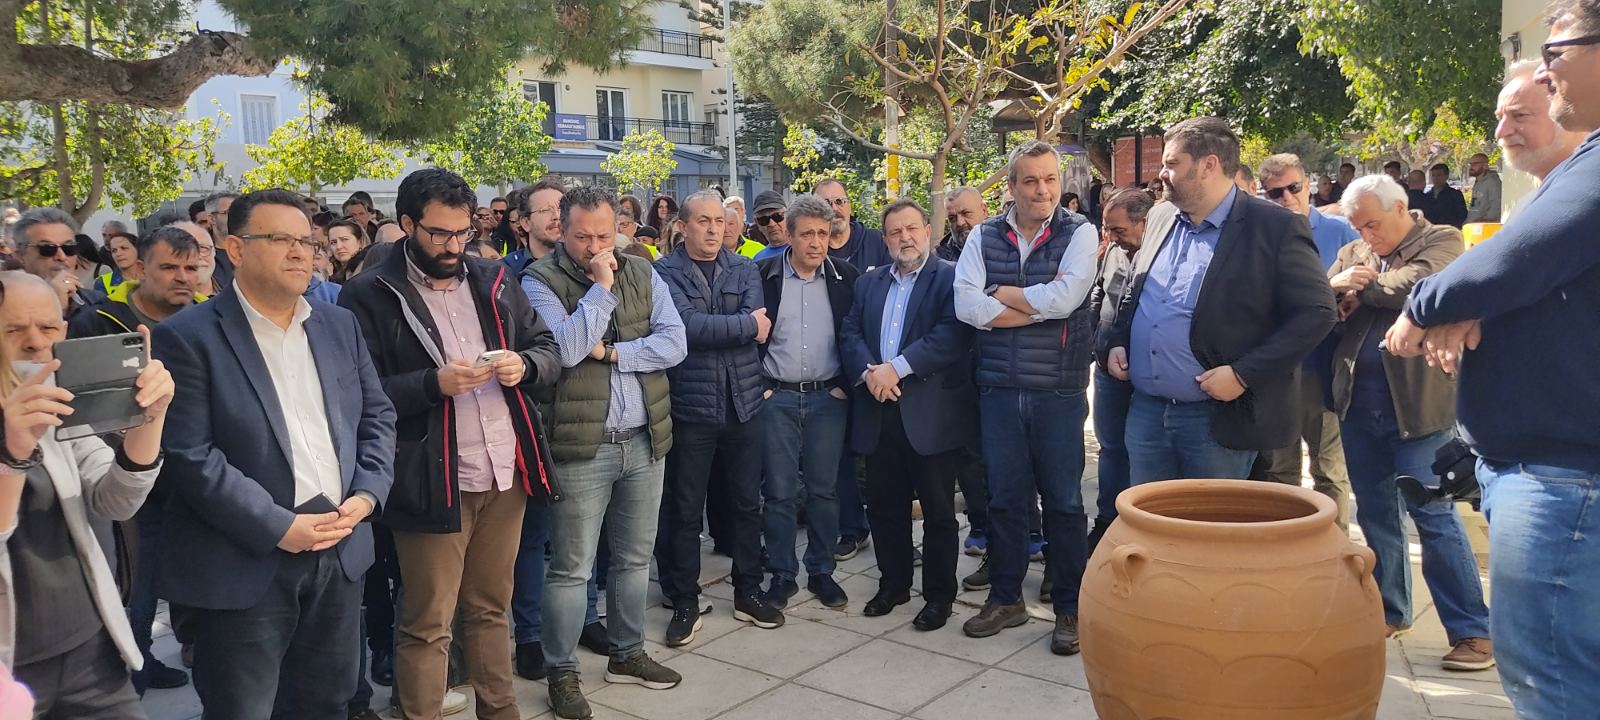 Στο πλευρό του αγώνα των συμβασιούχων OTA για την παραμονή στην εργασία τους, οι βουλευτές Ηρακλείου ΣΥΡΙΖΑ ΠΣ